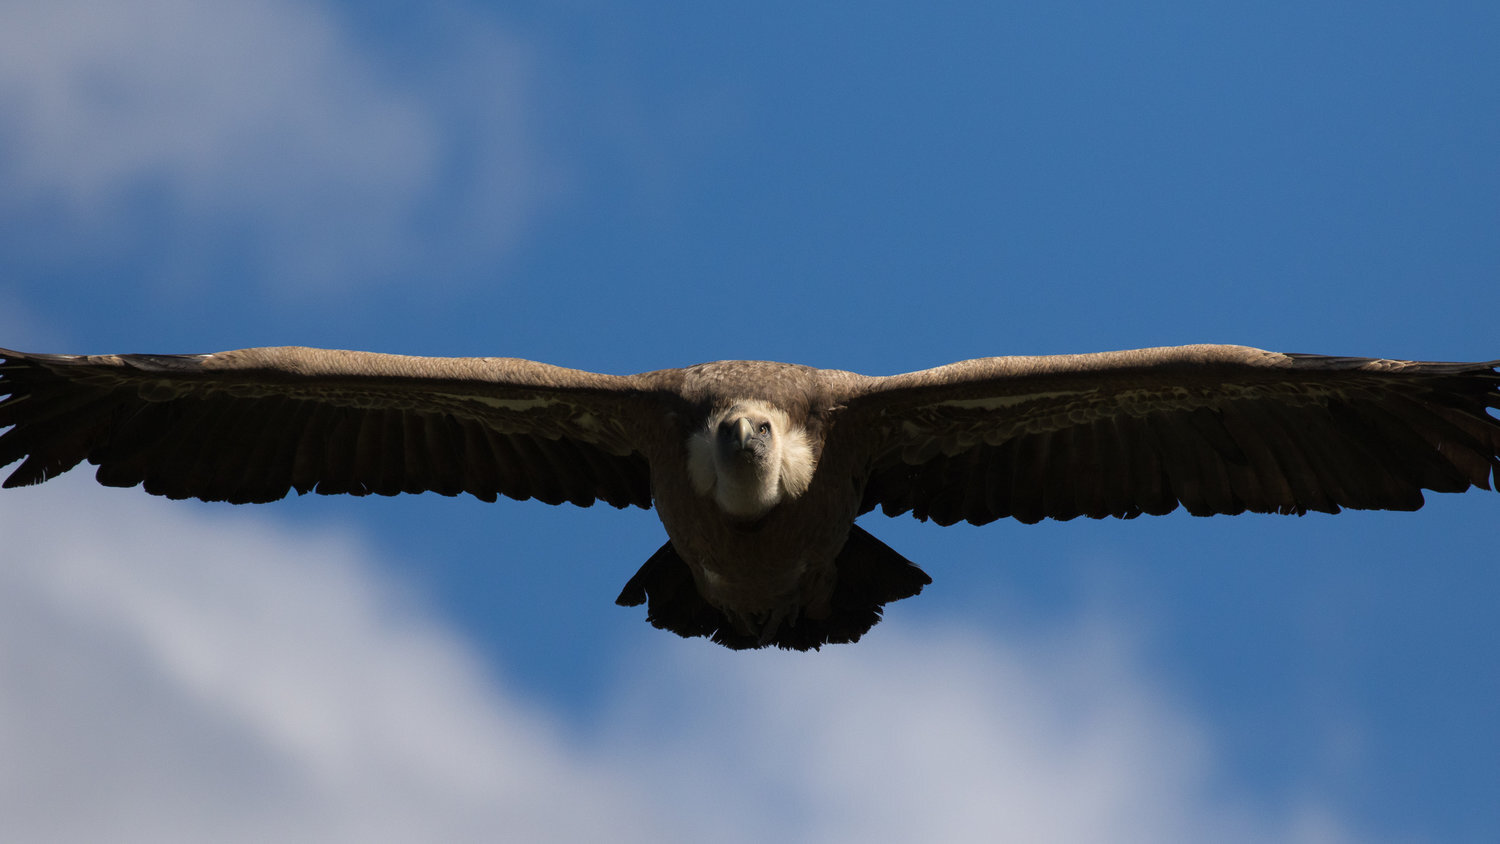 vautour fauve+salva fauna+france (6).jpg